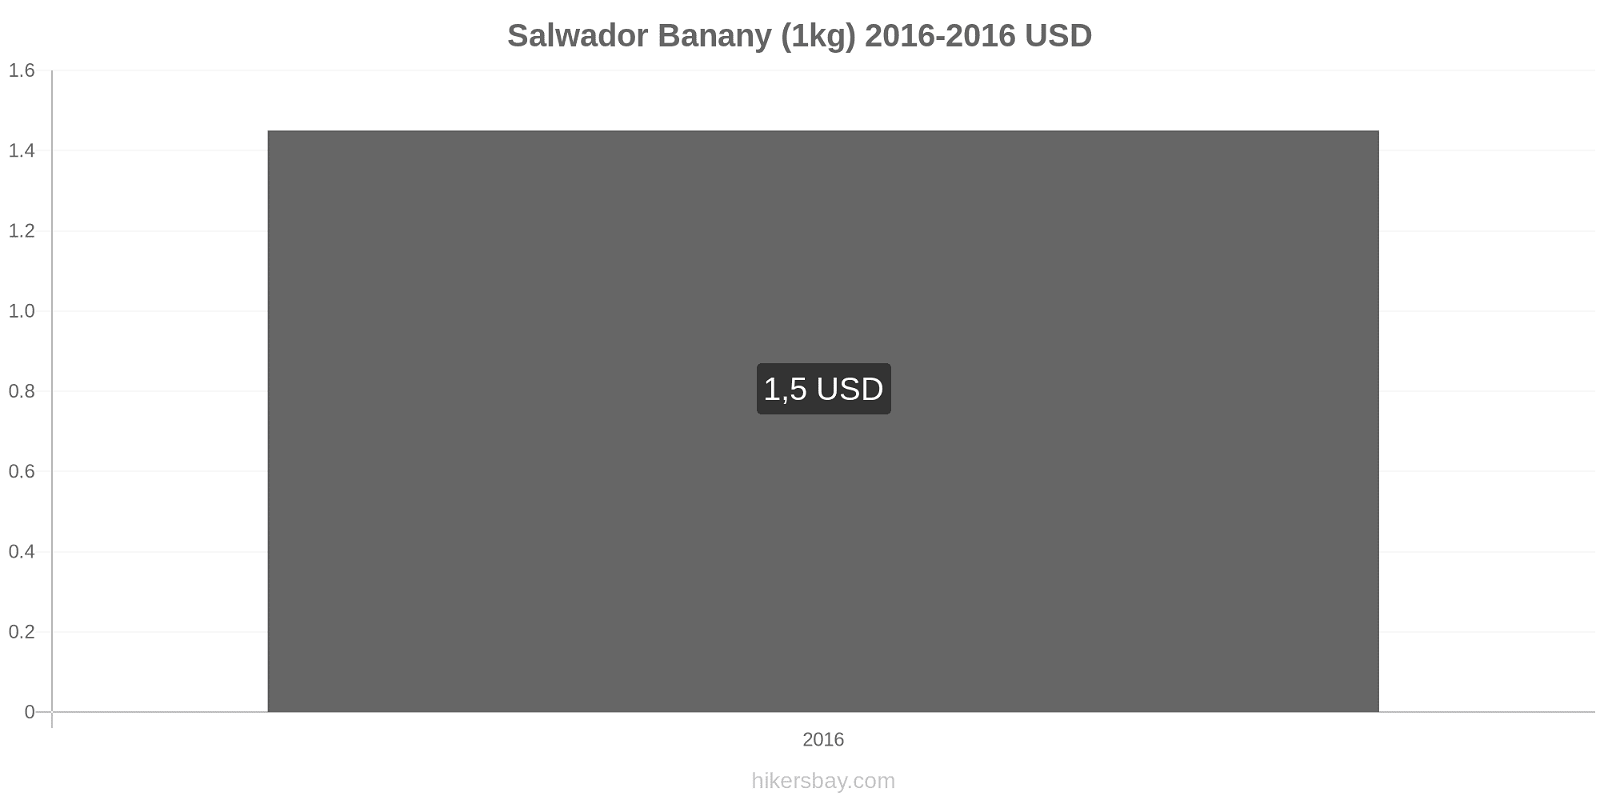 Salwador zmiany cen Banany (1kg) hikersbay.com